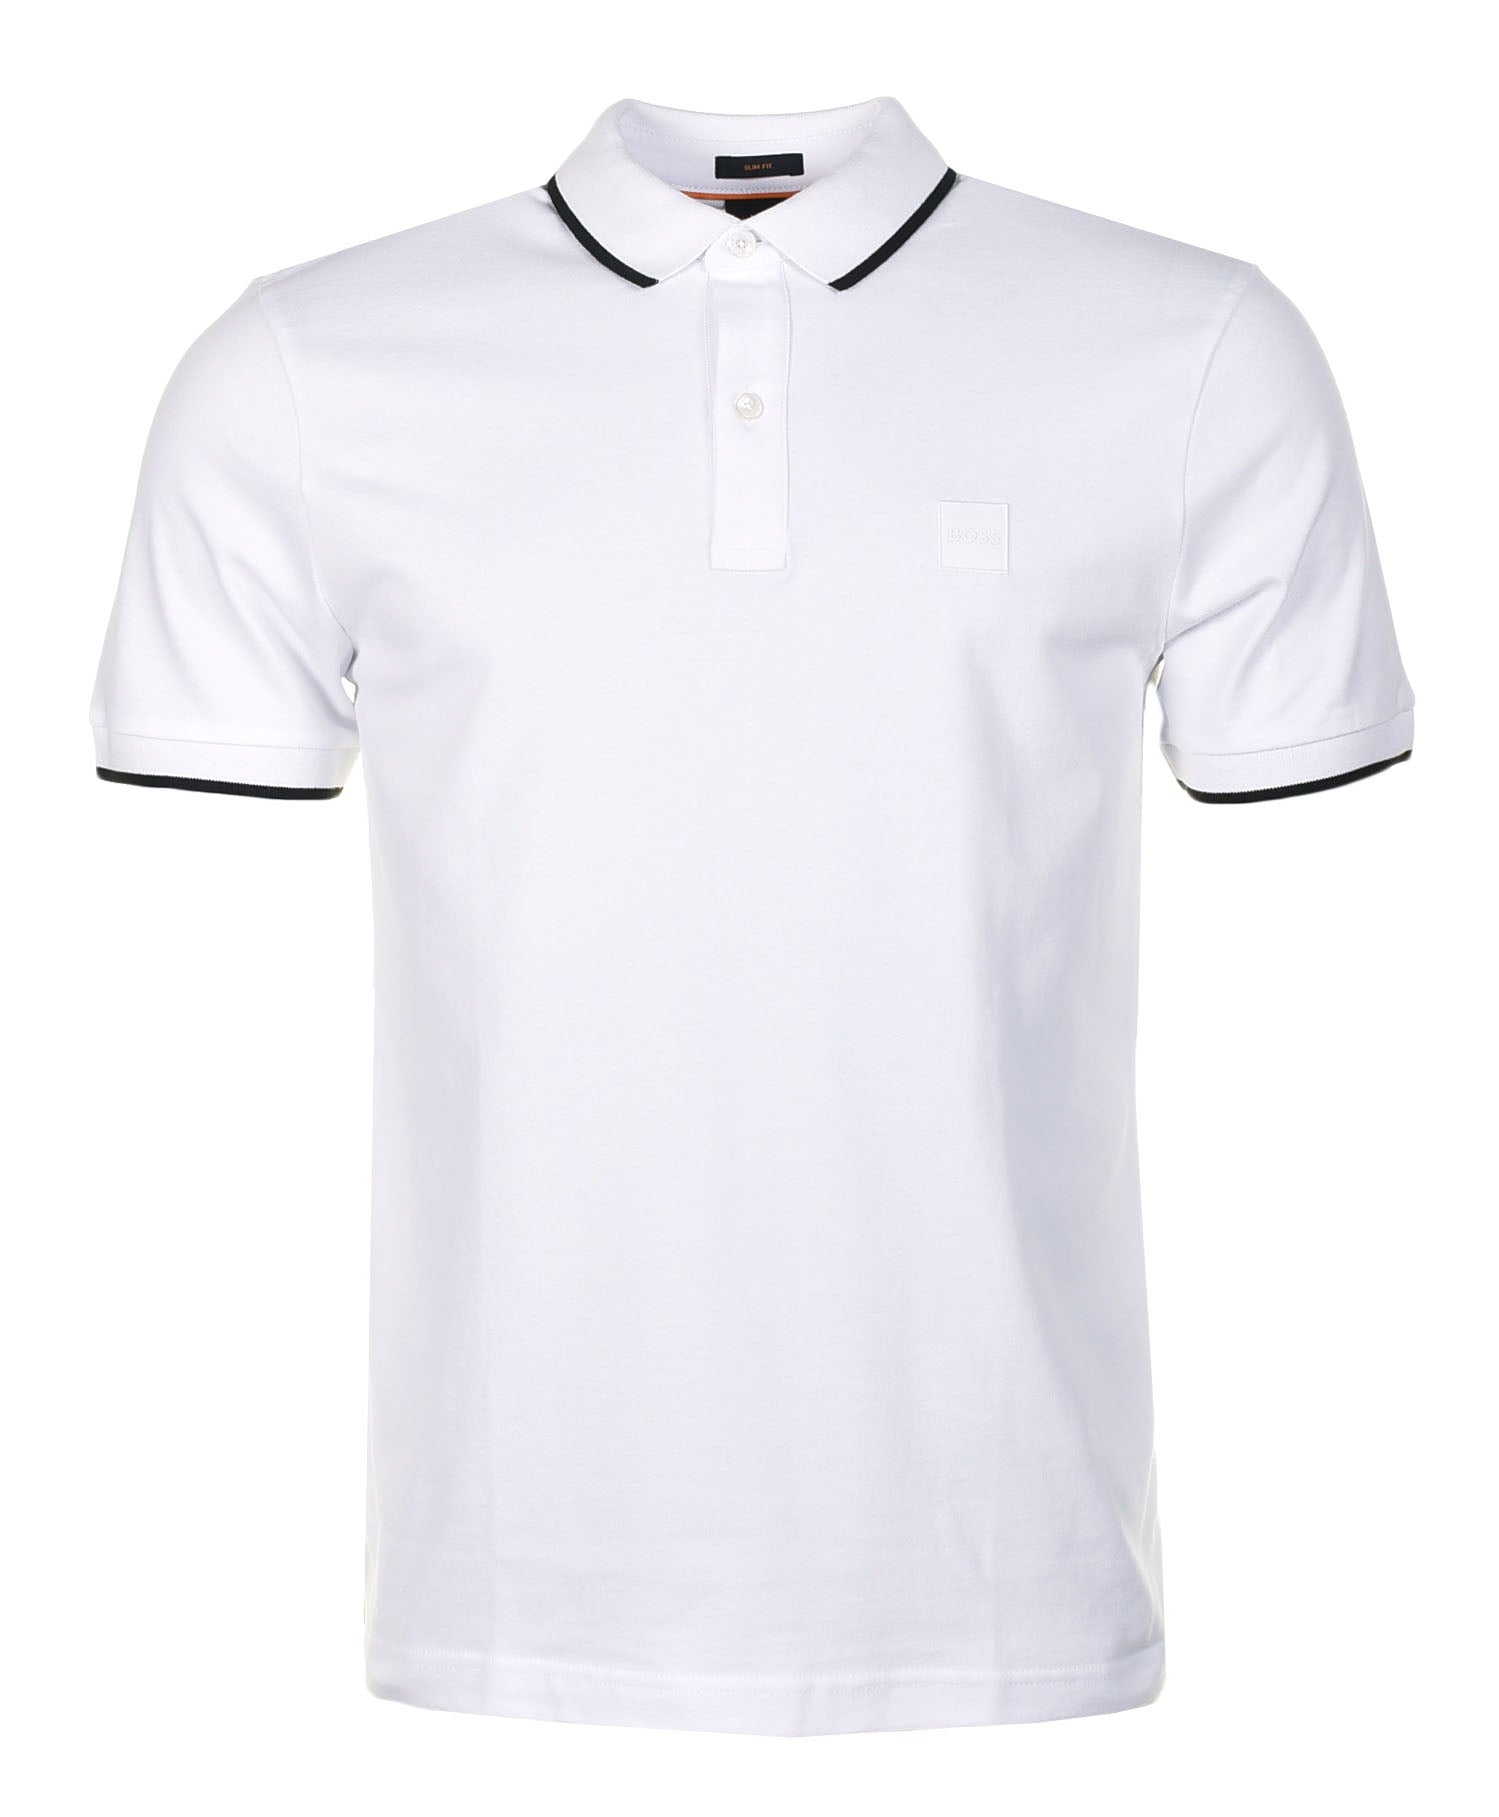 Passertip Short Sleeve Polo Shirt White